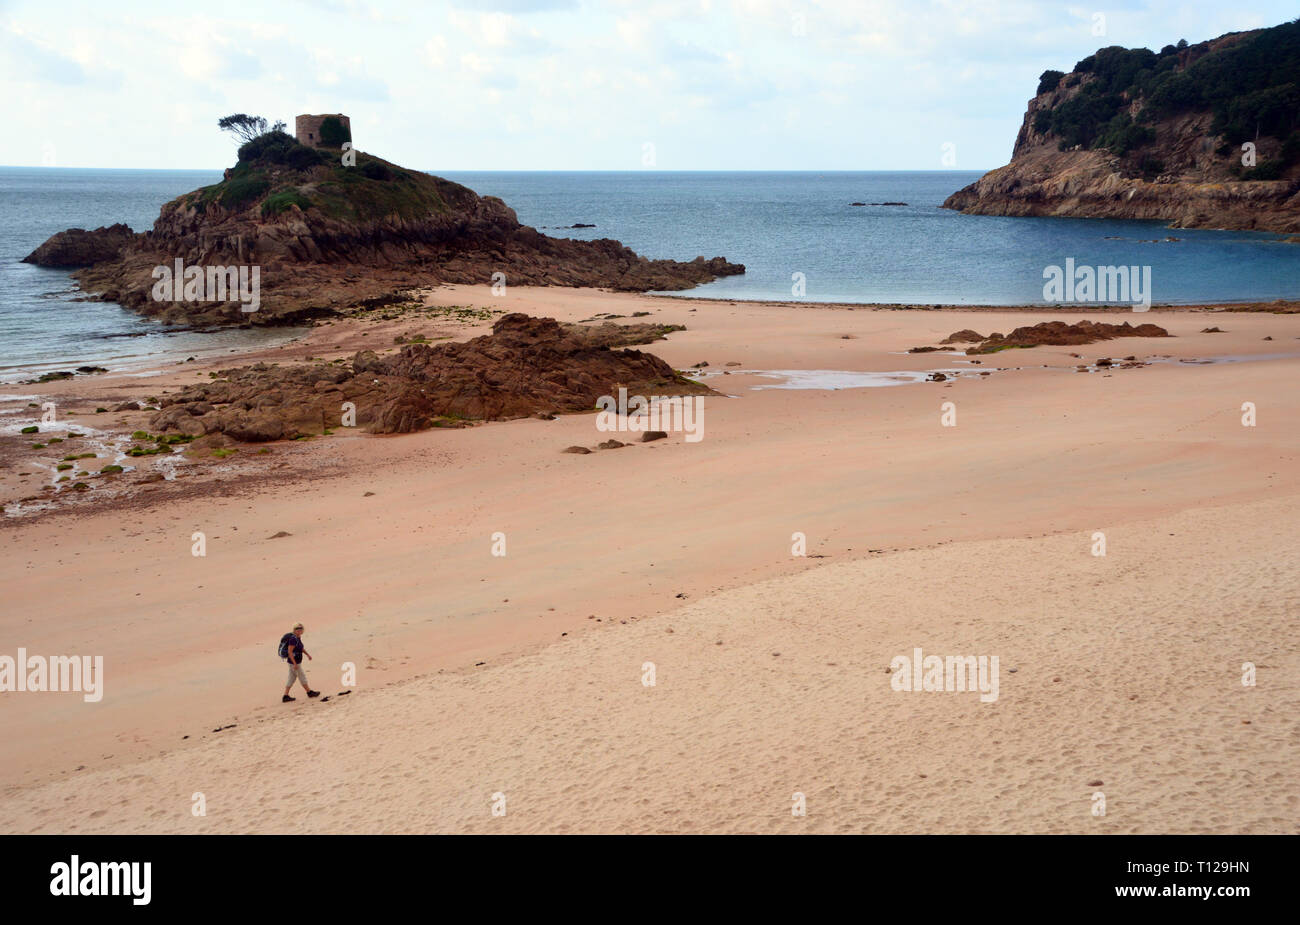 La donna gli escursionisti a piedi sulla spiaggia vicino Portelet Tower su un isola rocciosa nella baia di portlet, Saint Brélade parrocchia sull'isola di Jersey, nelle Isole del Canale. Foto Stock